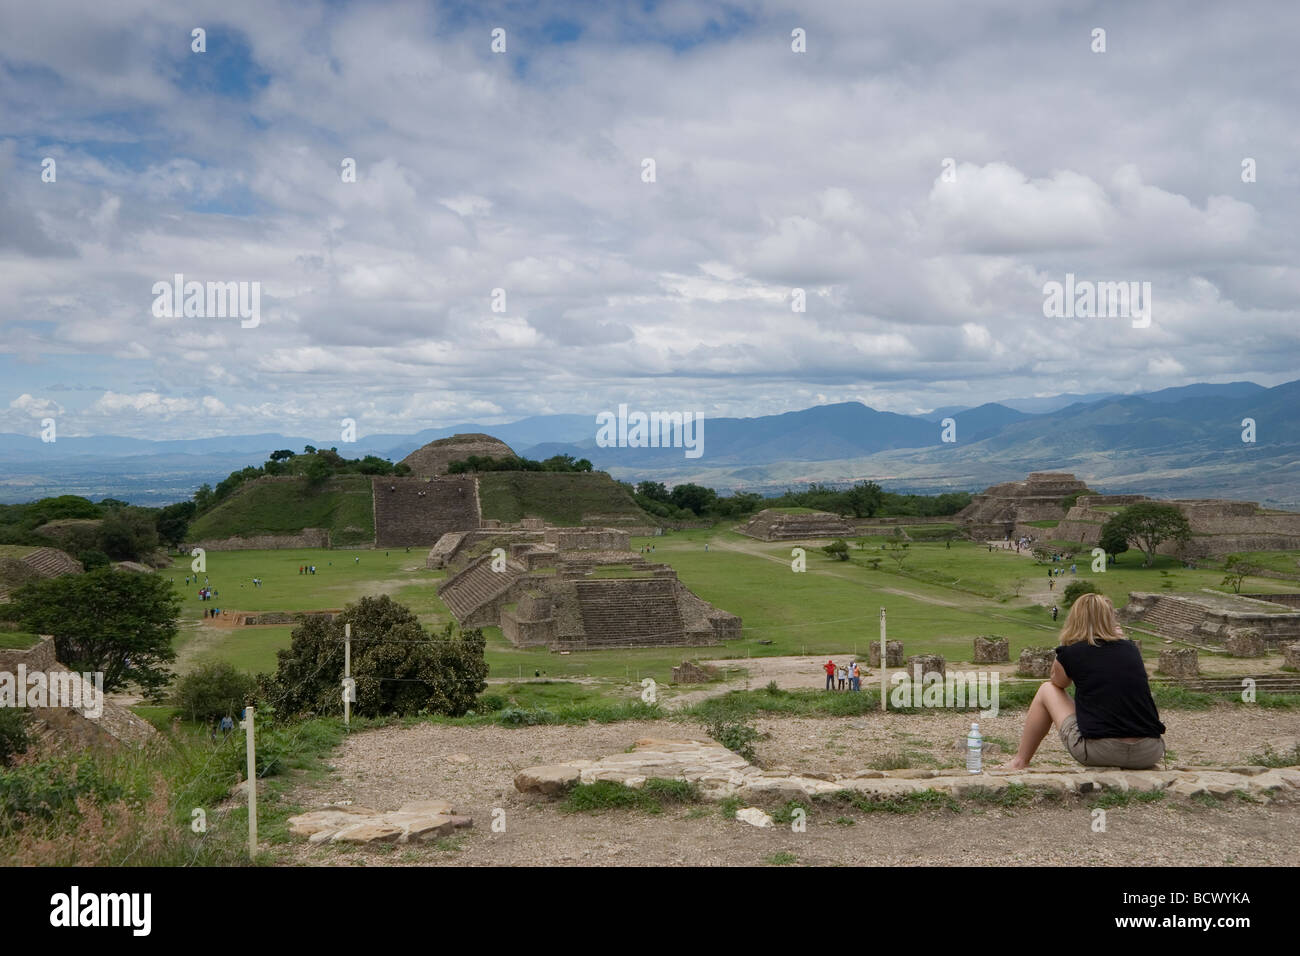 Monte Alban Ruine Standort Oaxaca, Mexiko, Stein 500 v. Chr. - 750 n. Chr. die älteste steinerne Stadt in Mexiko, Zapoteken Bauherren, pyramidenförmige Plattformen Stockfoto